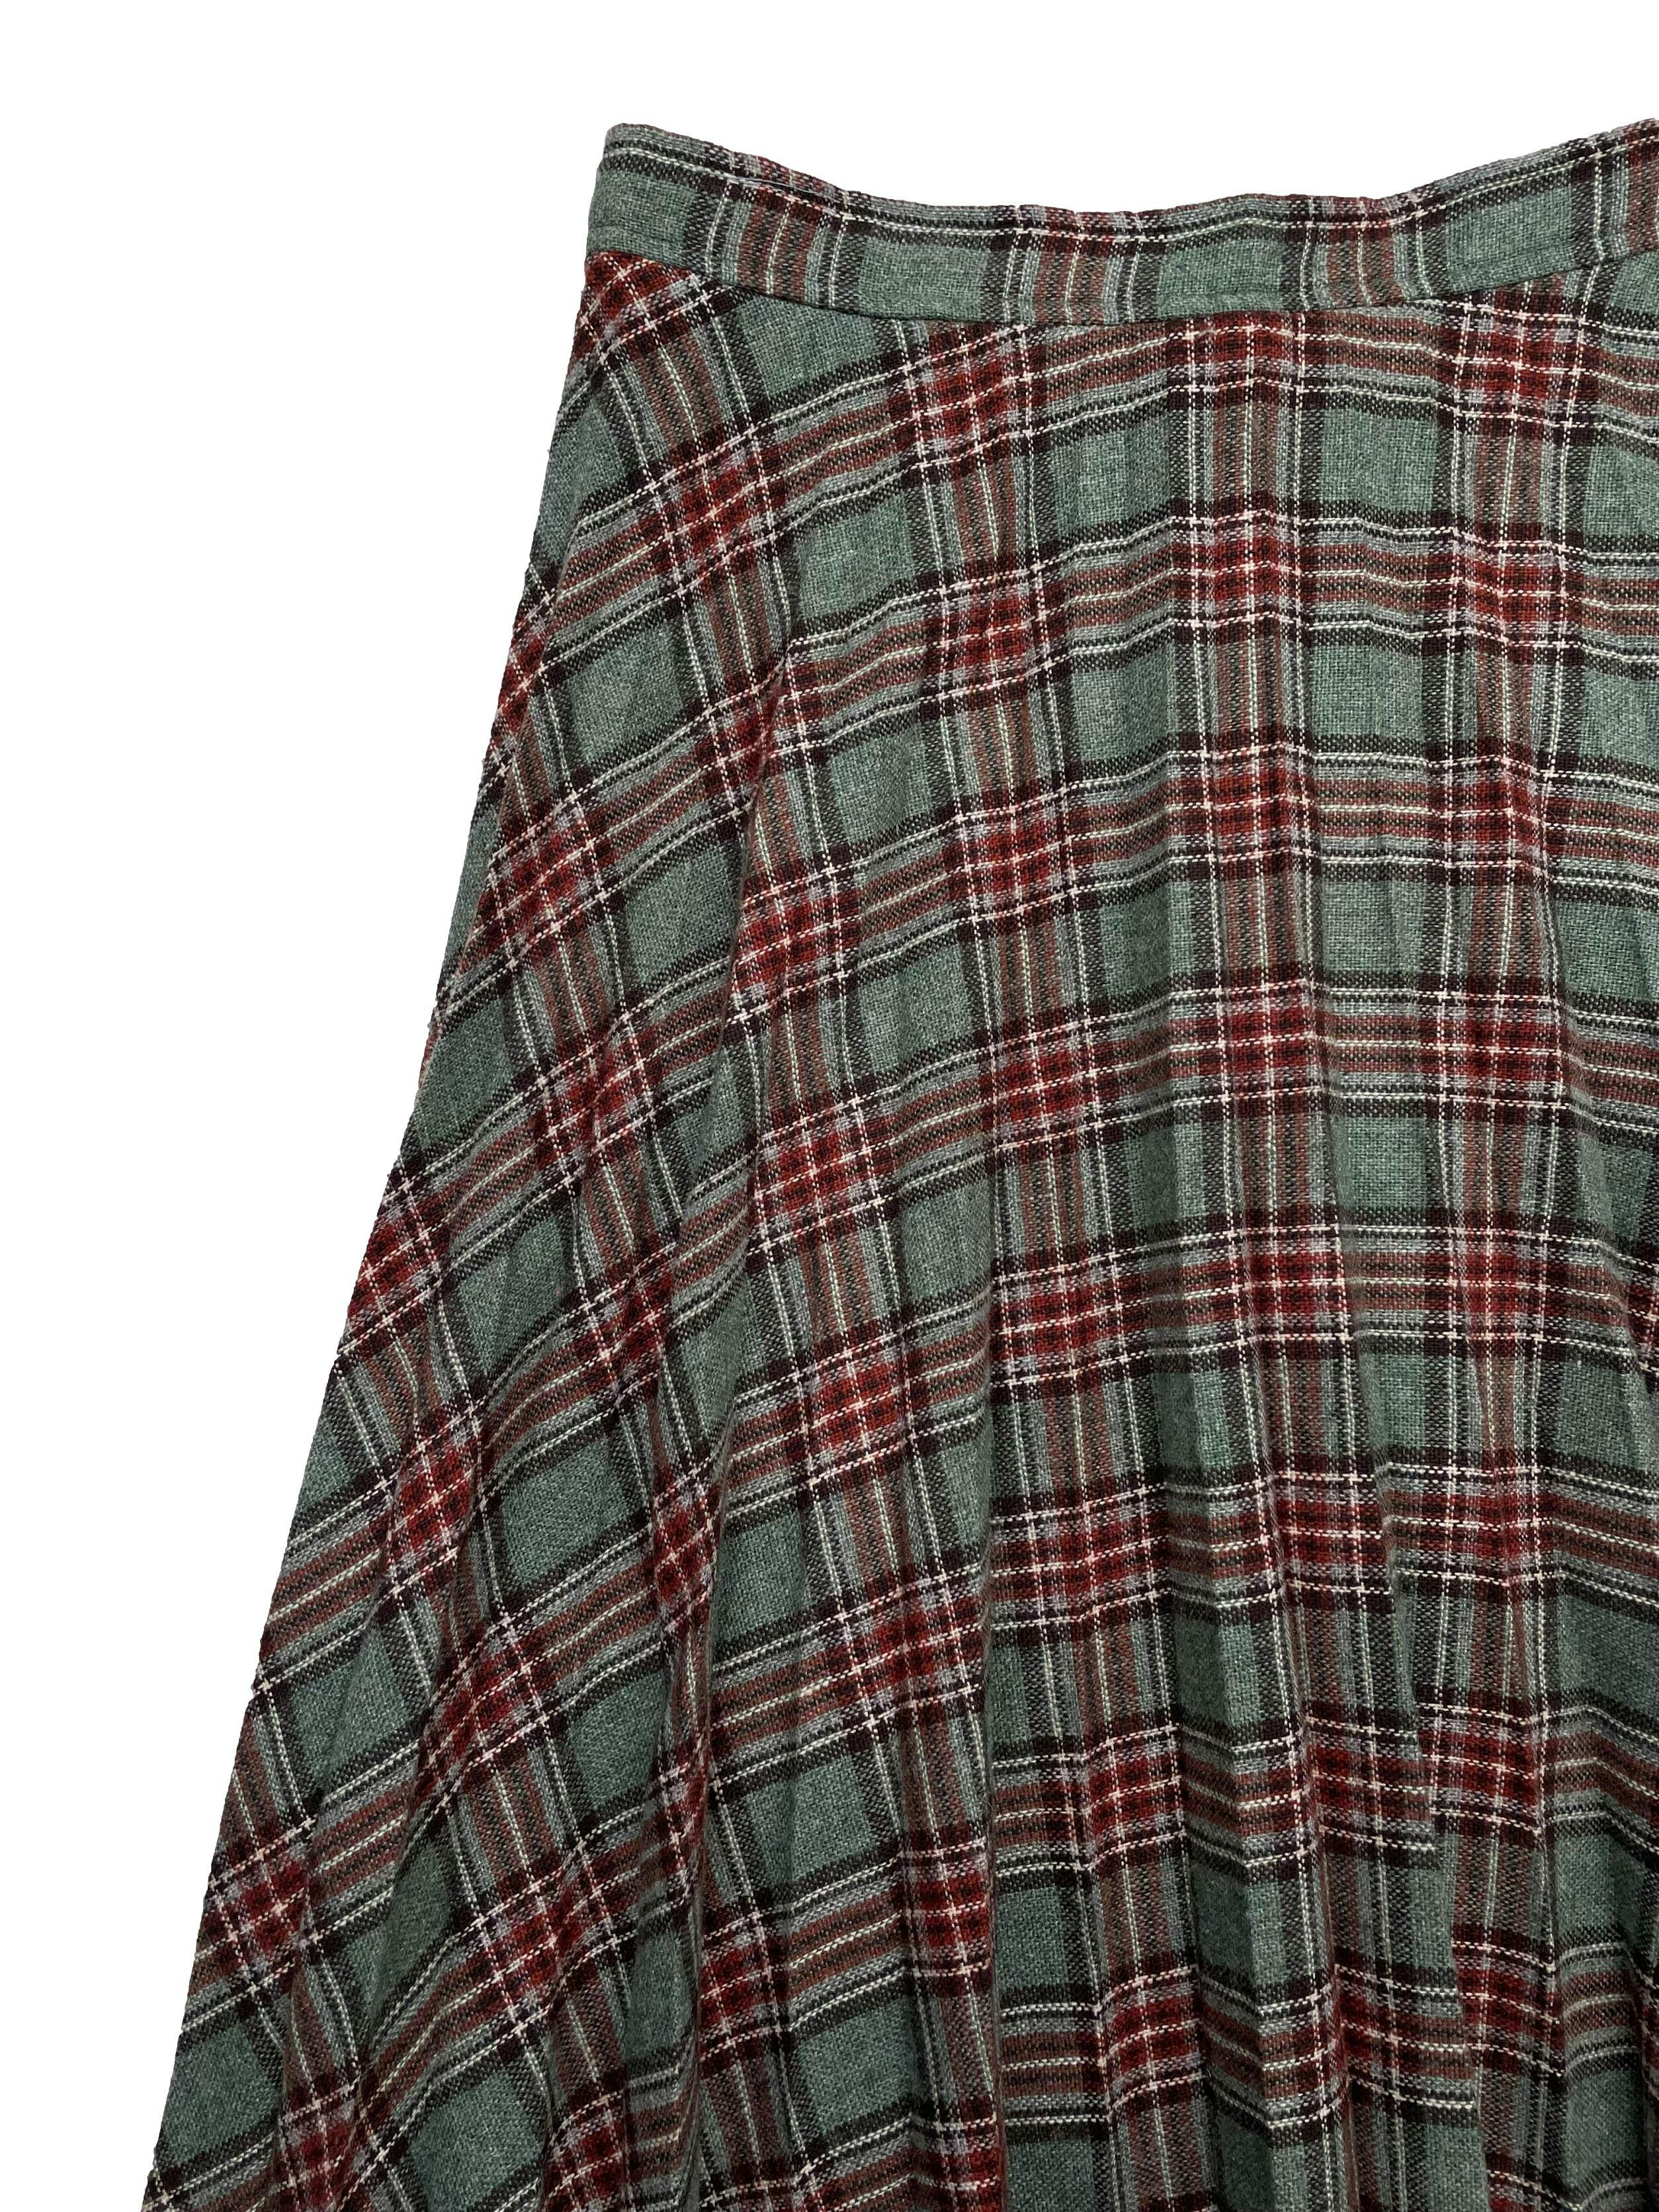 Falda vintage en lanilla escocesa en color verde y marrón, con tableros .Cintura 70cm, Largo 74cm.